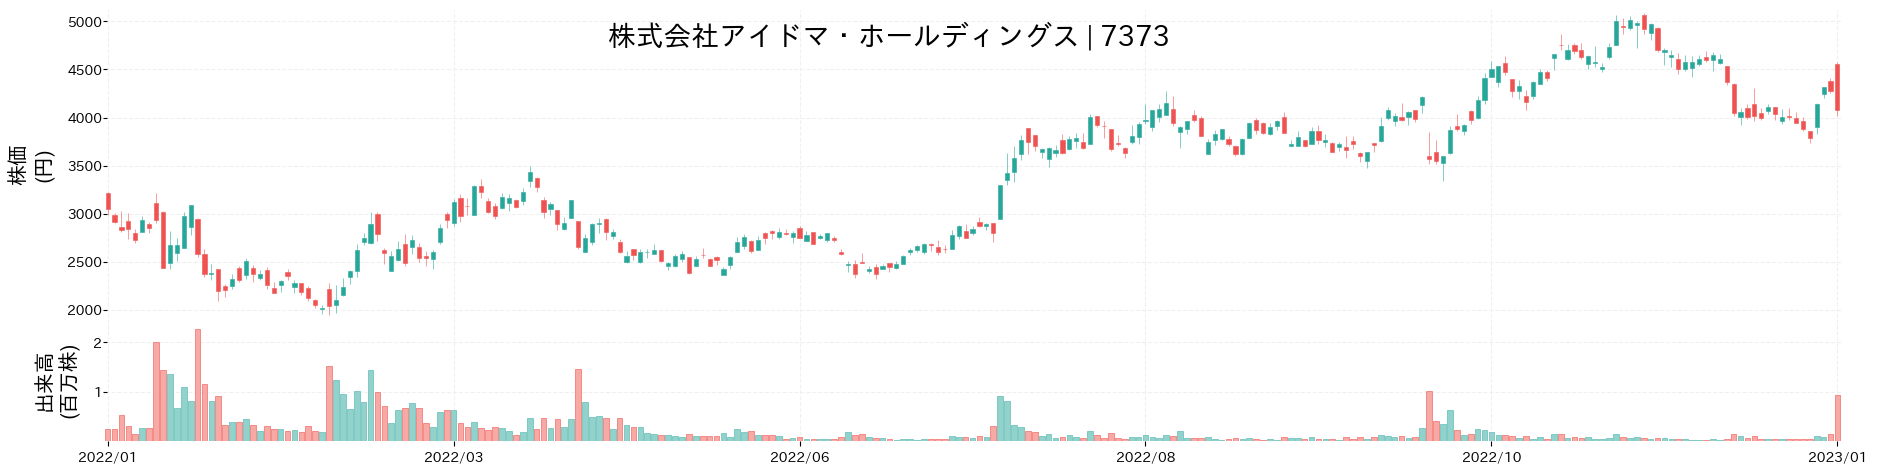 アイドマ・ホールディングスの株価推移(2022)